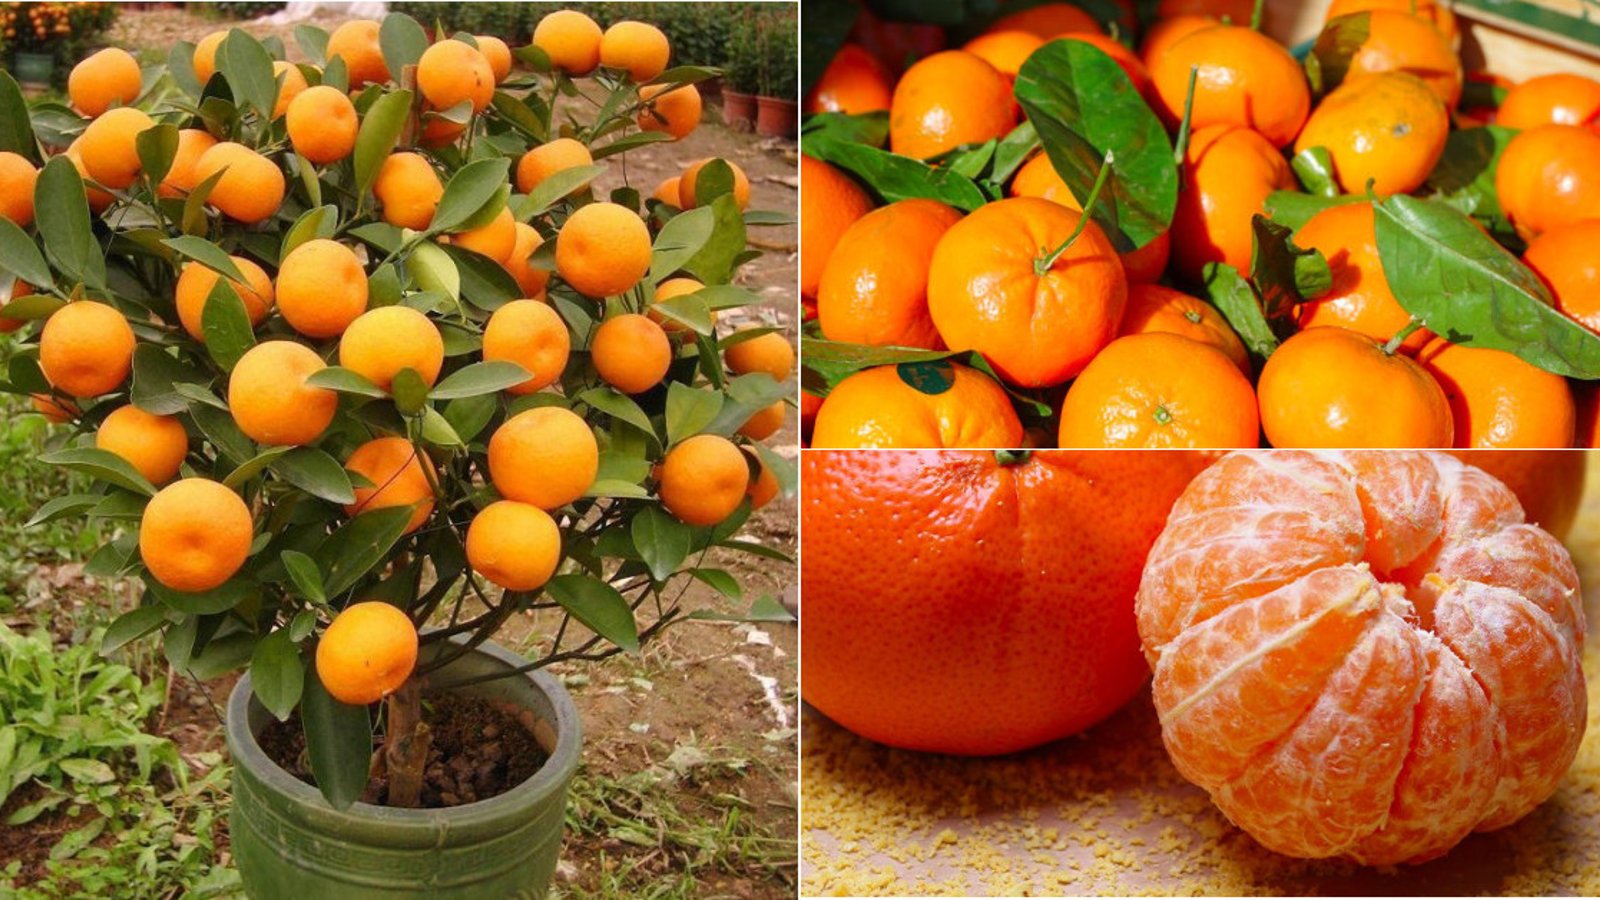 Tout ce qu'il faut savoir pour cultiver les mandarines à profusion et ne plus avoir à en acheter! 